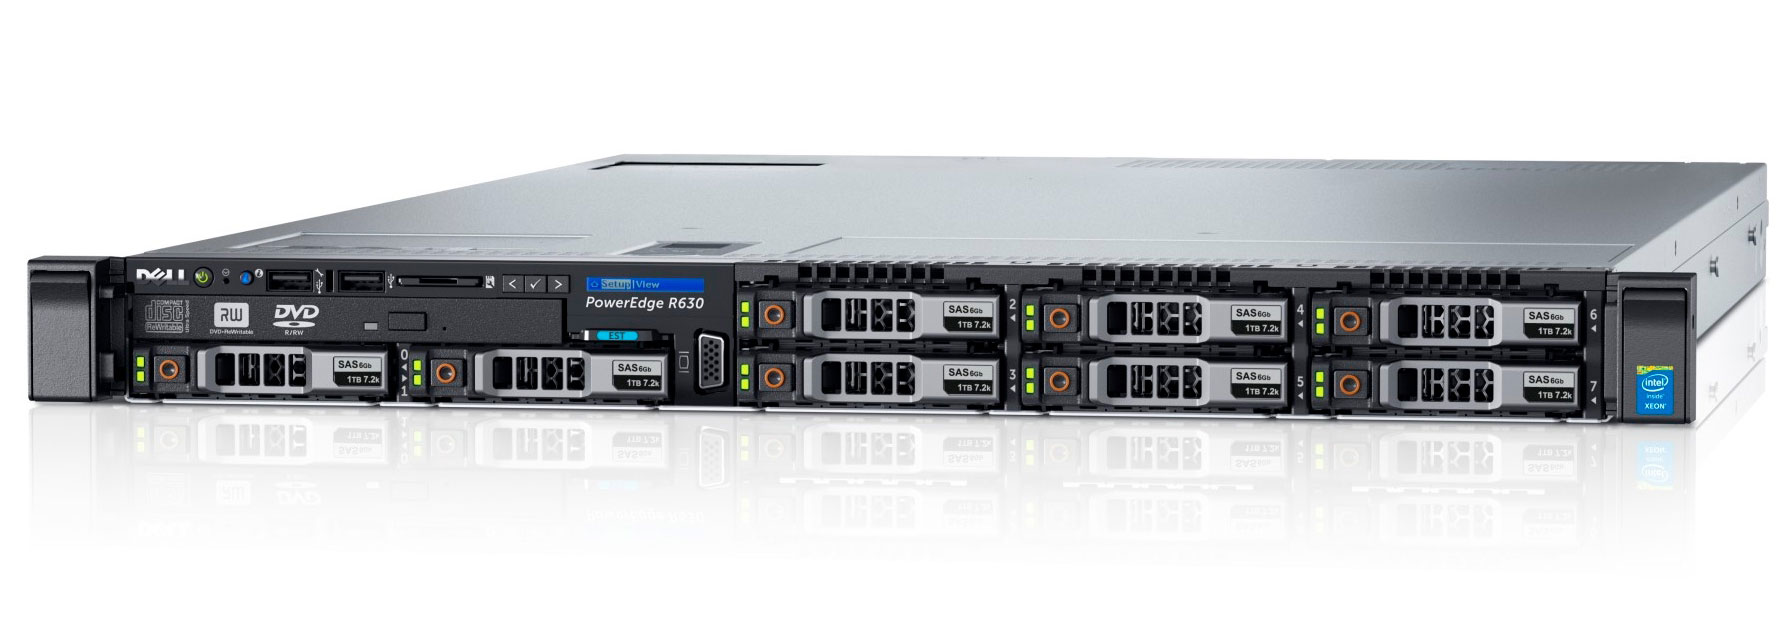 Подробное фото Сервер DELL PowerEdge R630 2*Xeon E5-2683v4 192Gb 2133P DDR4 8x noHDD 2.5", SAS RAID Perc H730, 1024Mb, DVD, 2*PSU